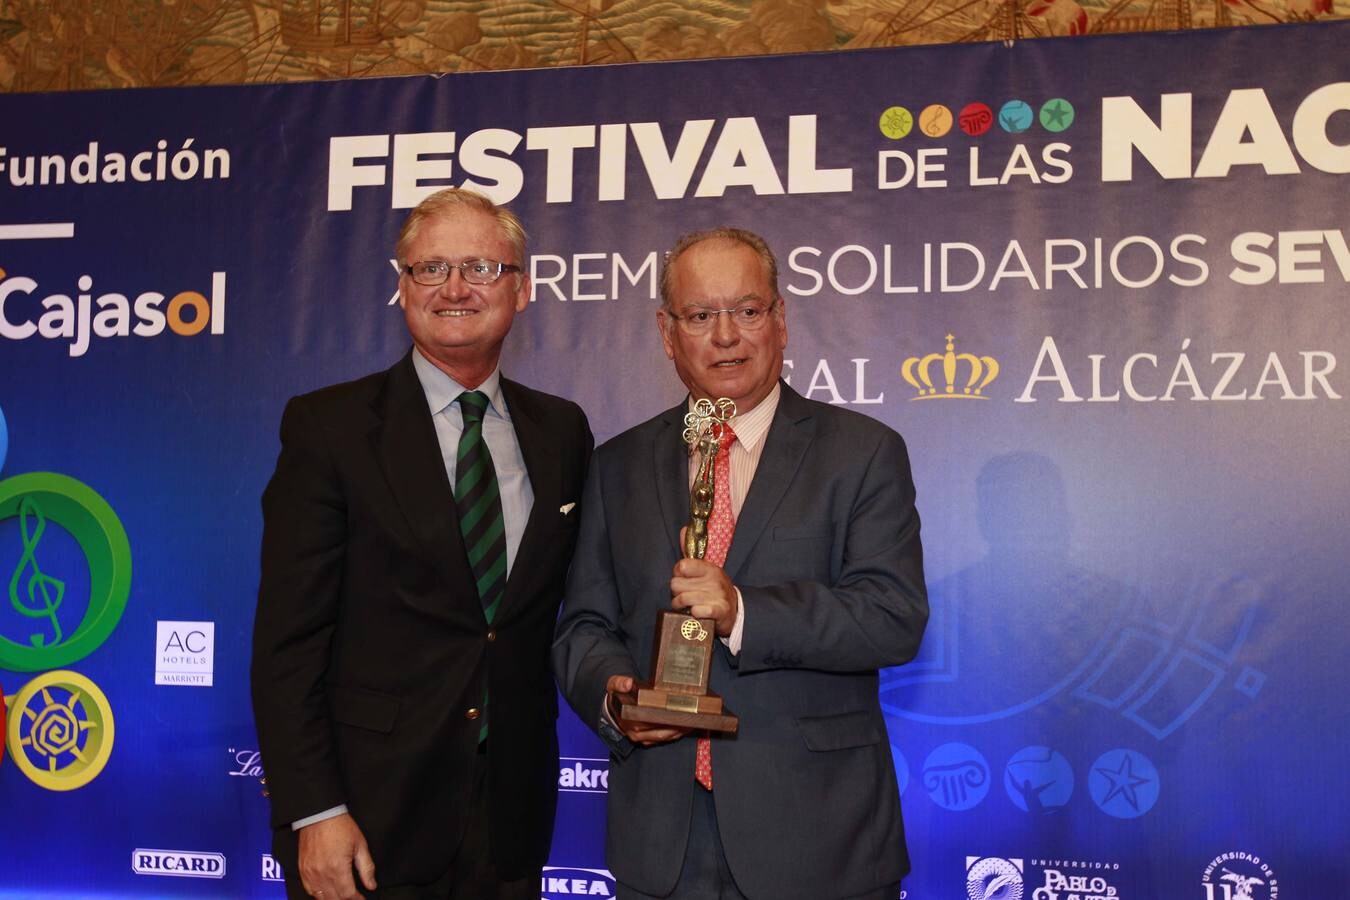 El Festival de las Naciones entrega sus XIII Premios Solidarios